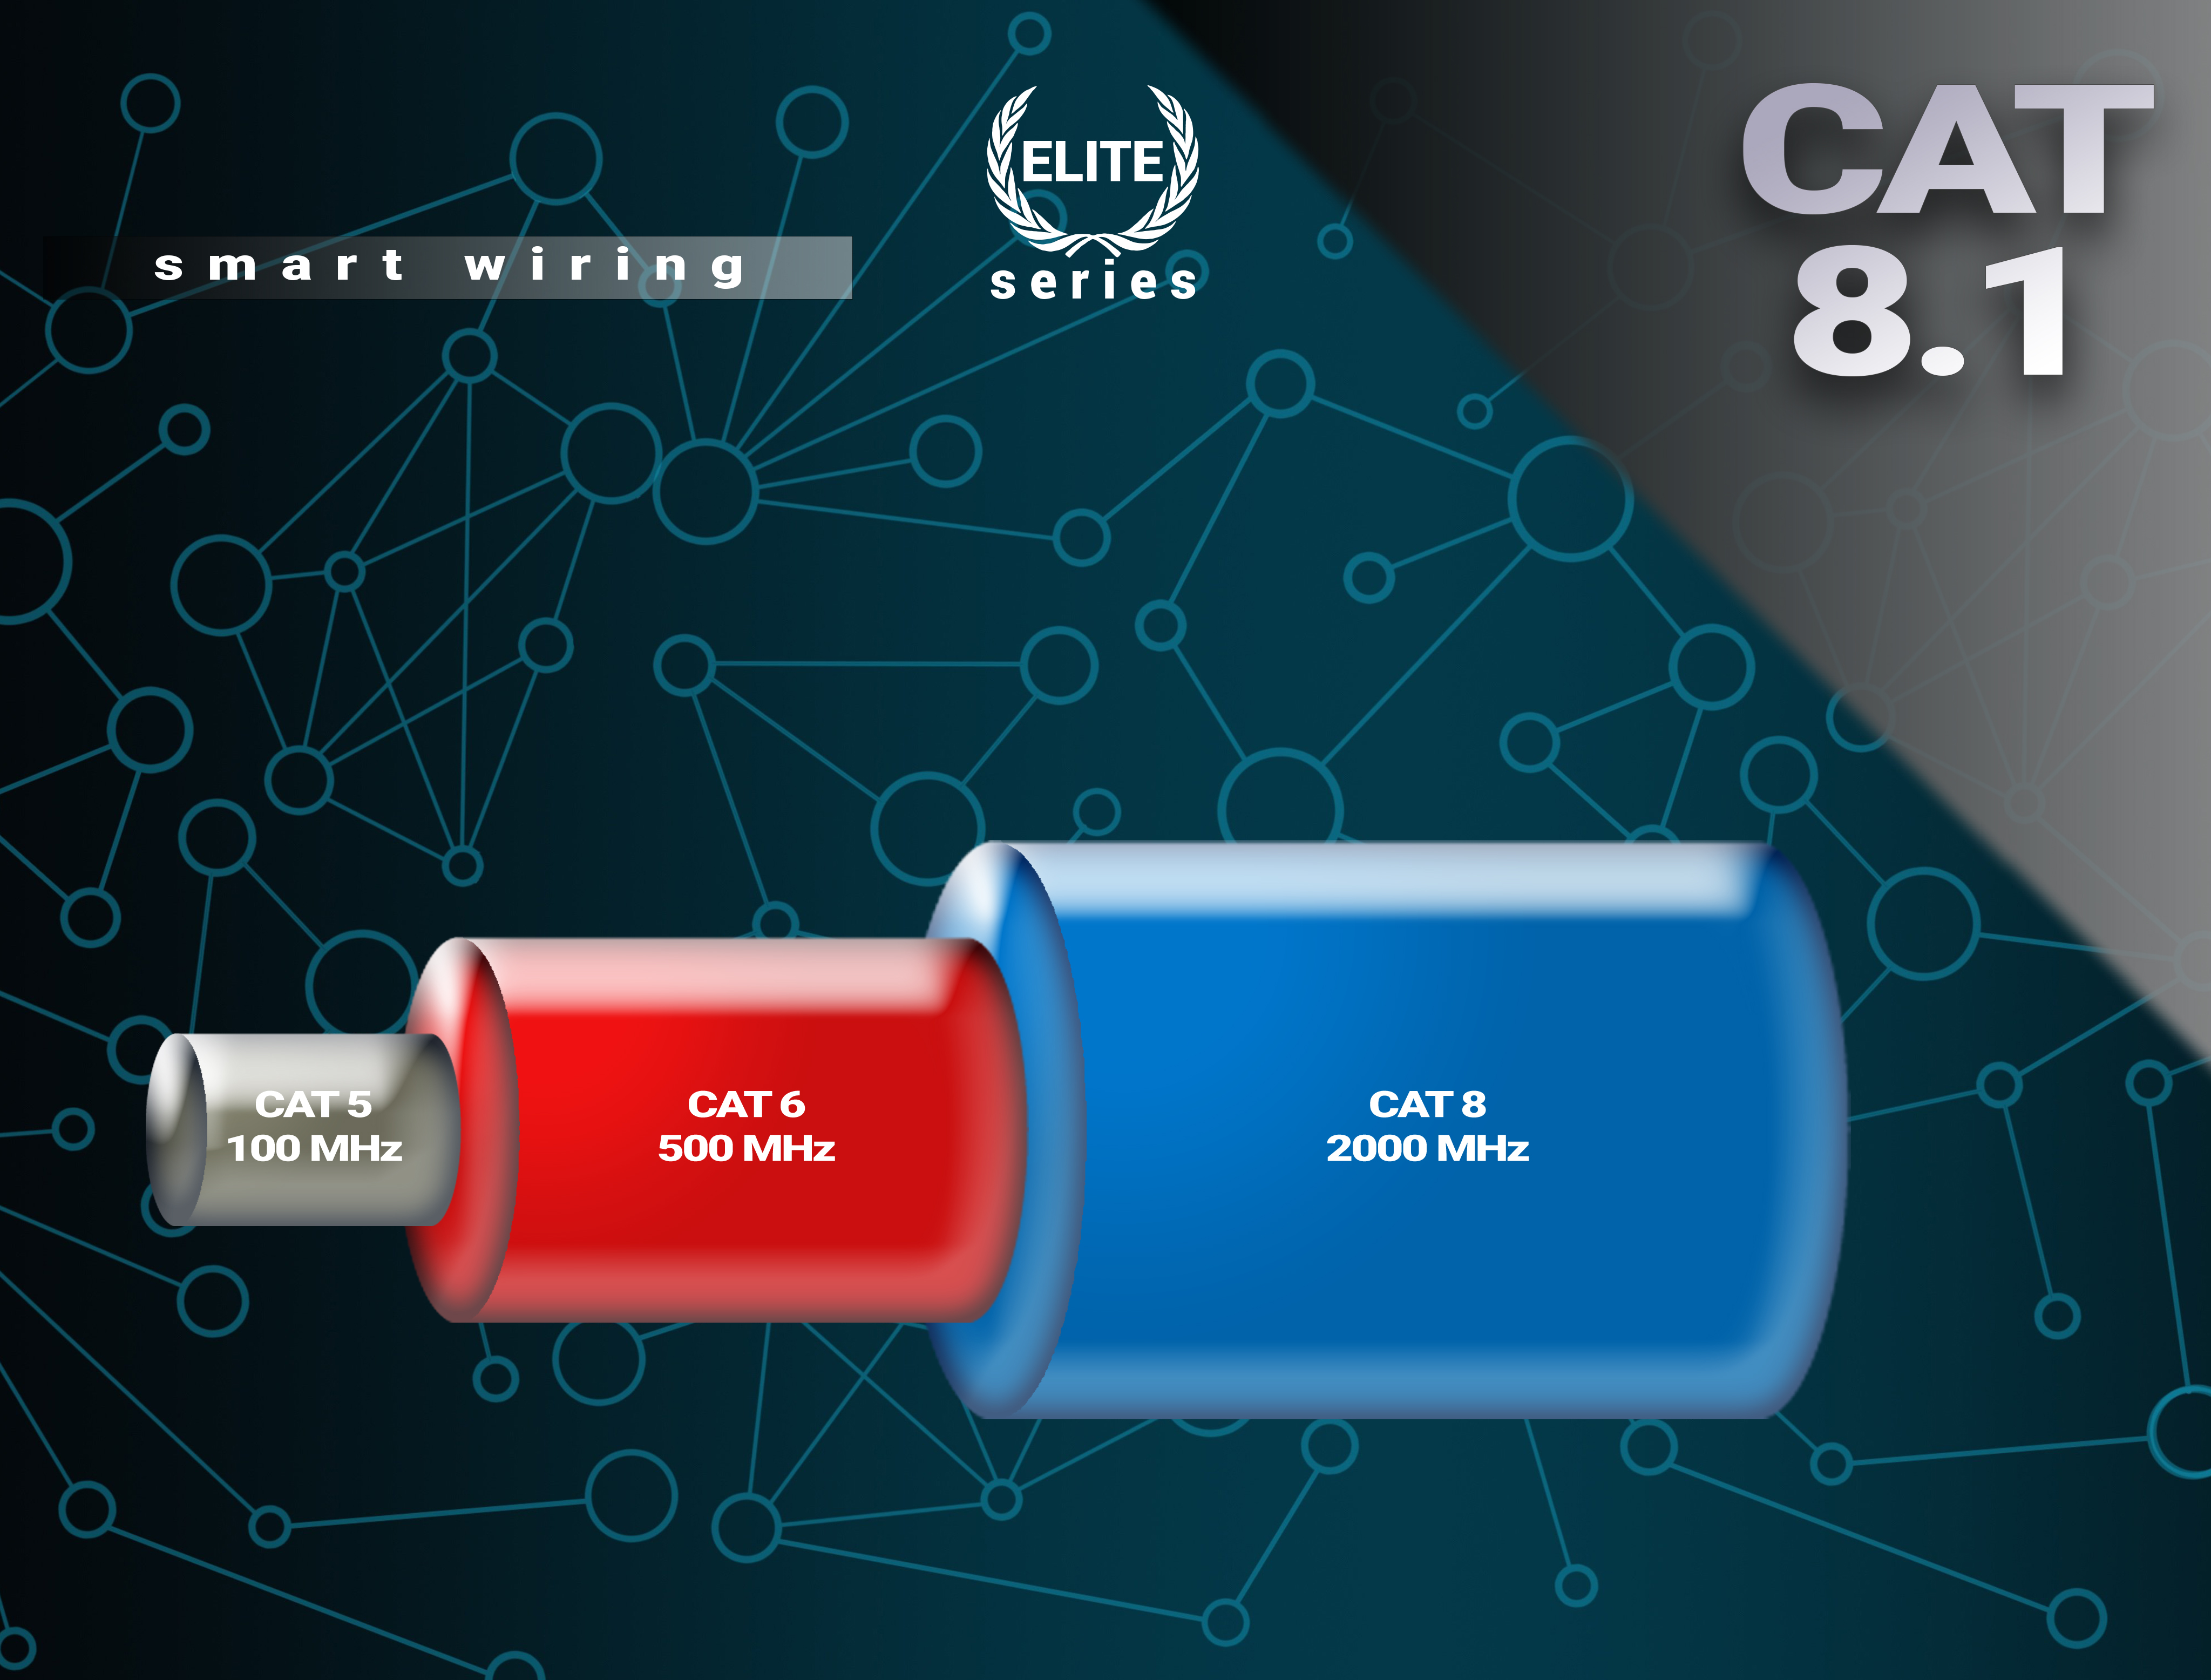 CAT Gbps Elite-Series, - Premium BIVANI Netzwerkkabel, LAN Kabel 7,5 m 40 8.1